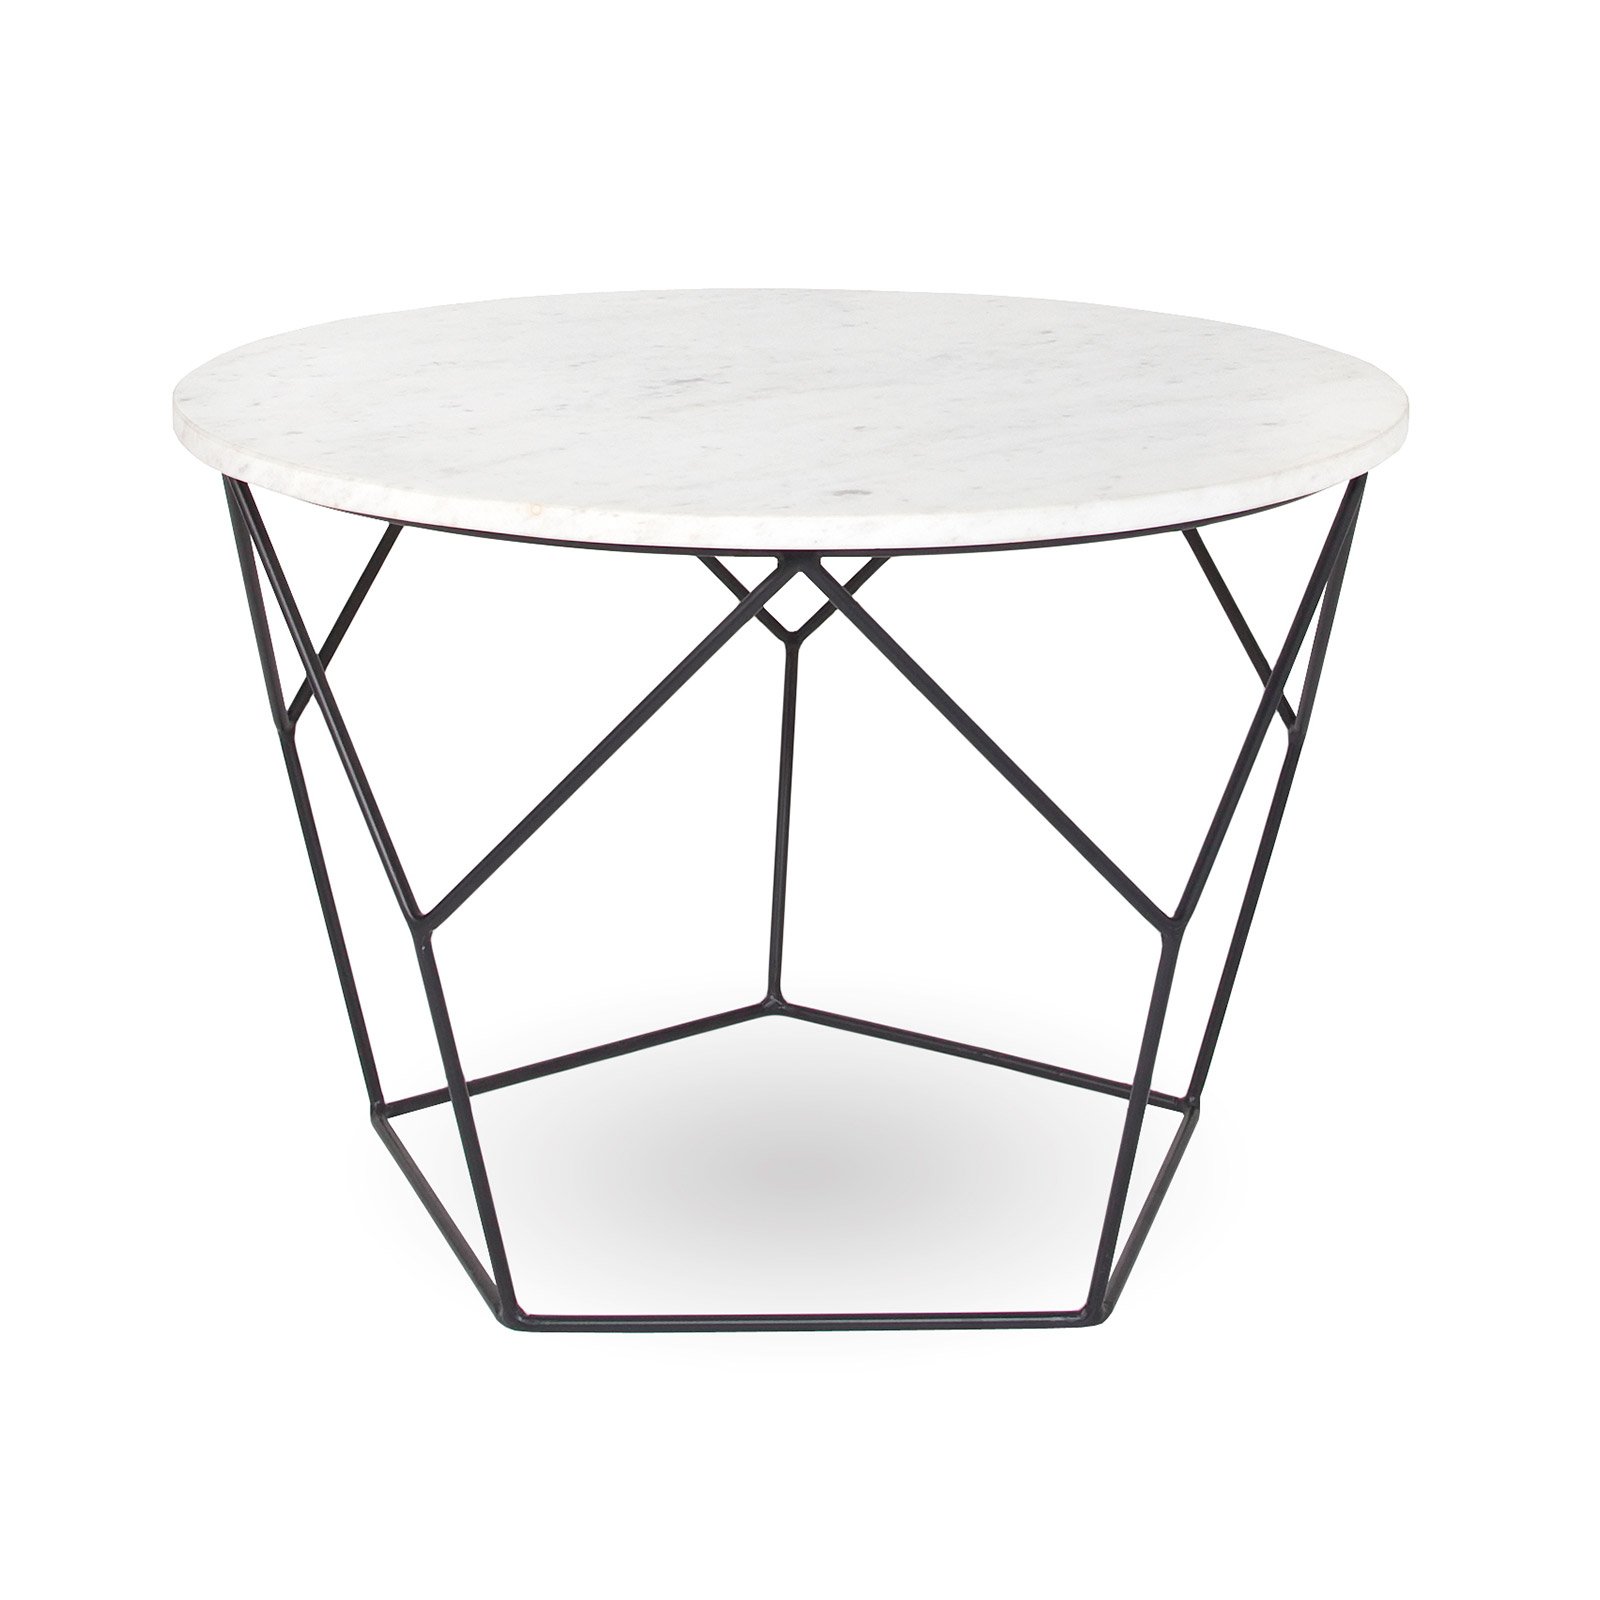 Журнальный столик Nile Round Coffee Table DK modern furniture